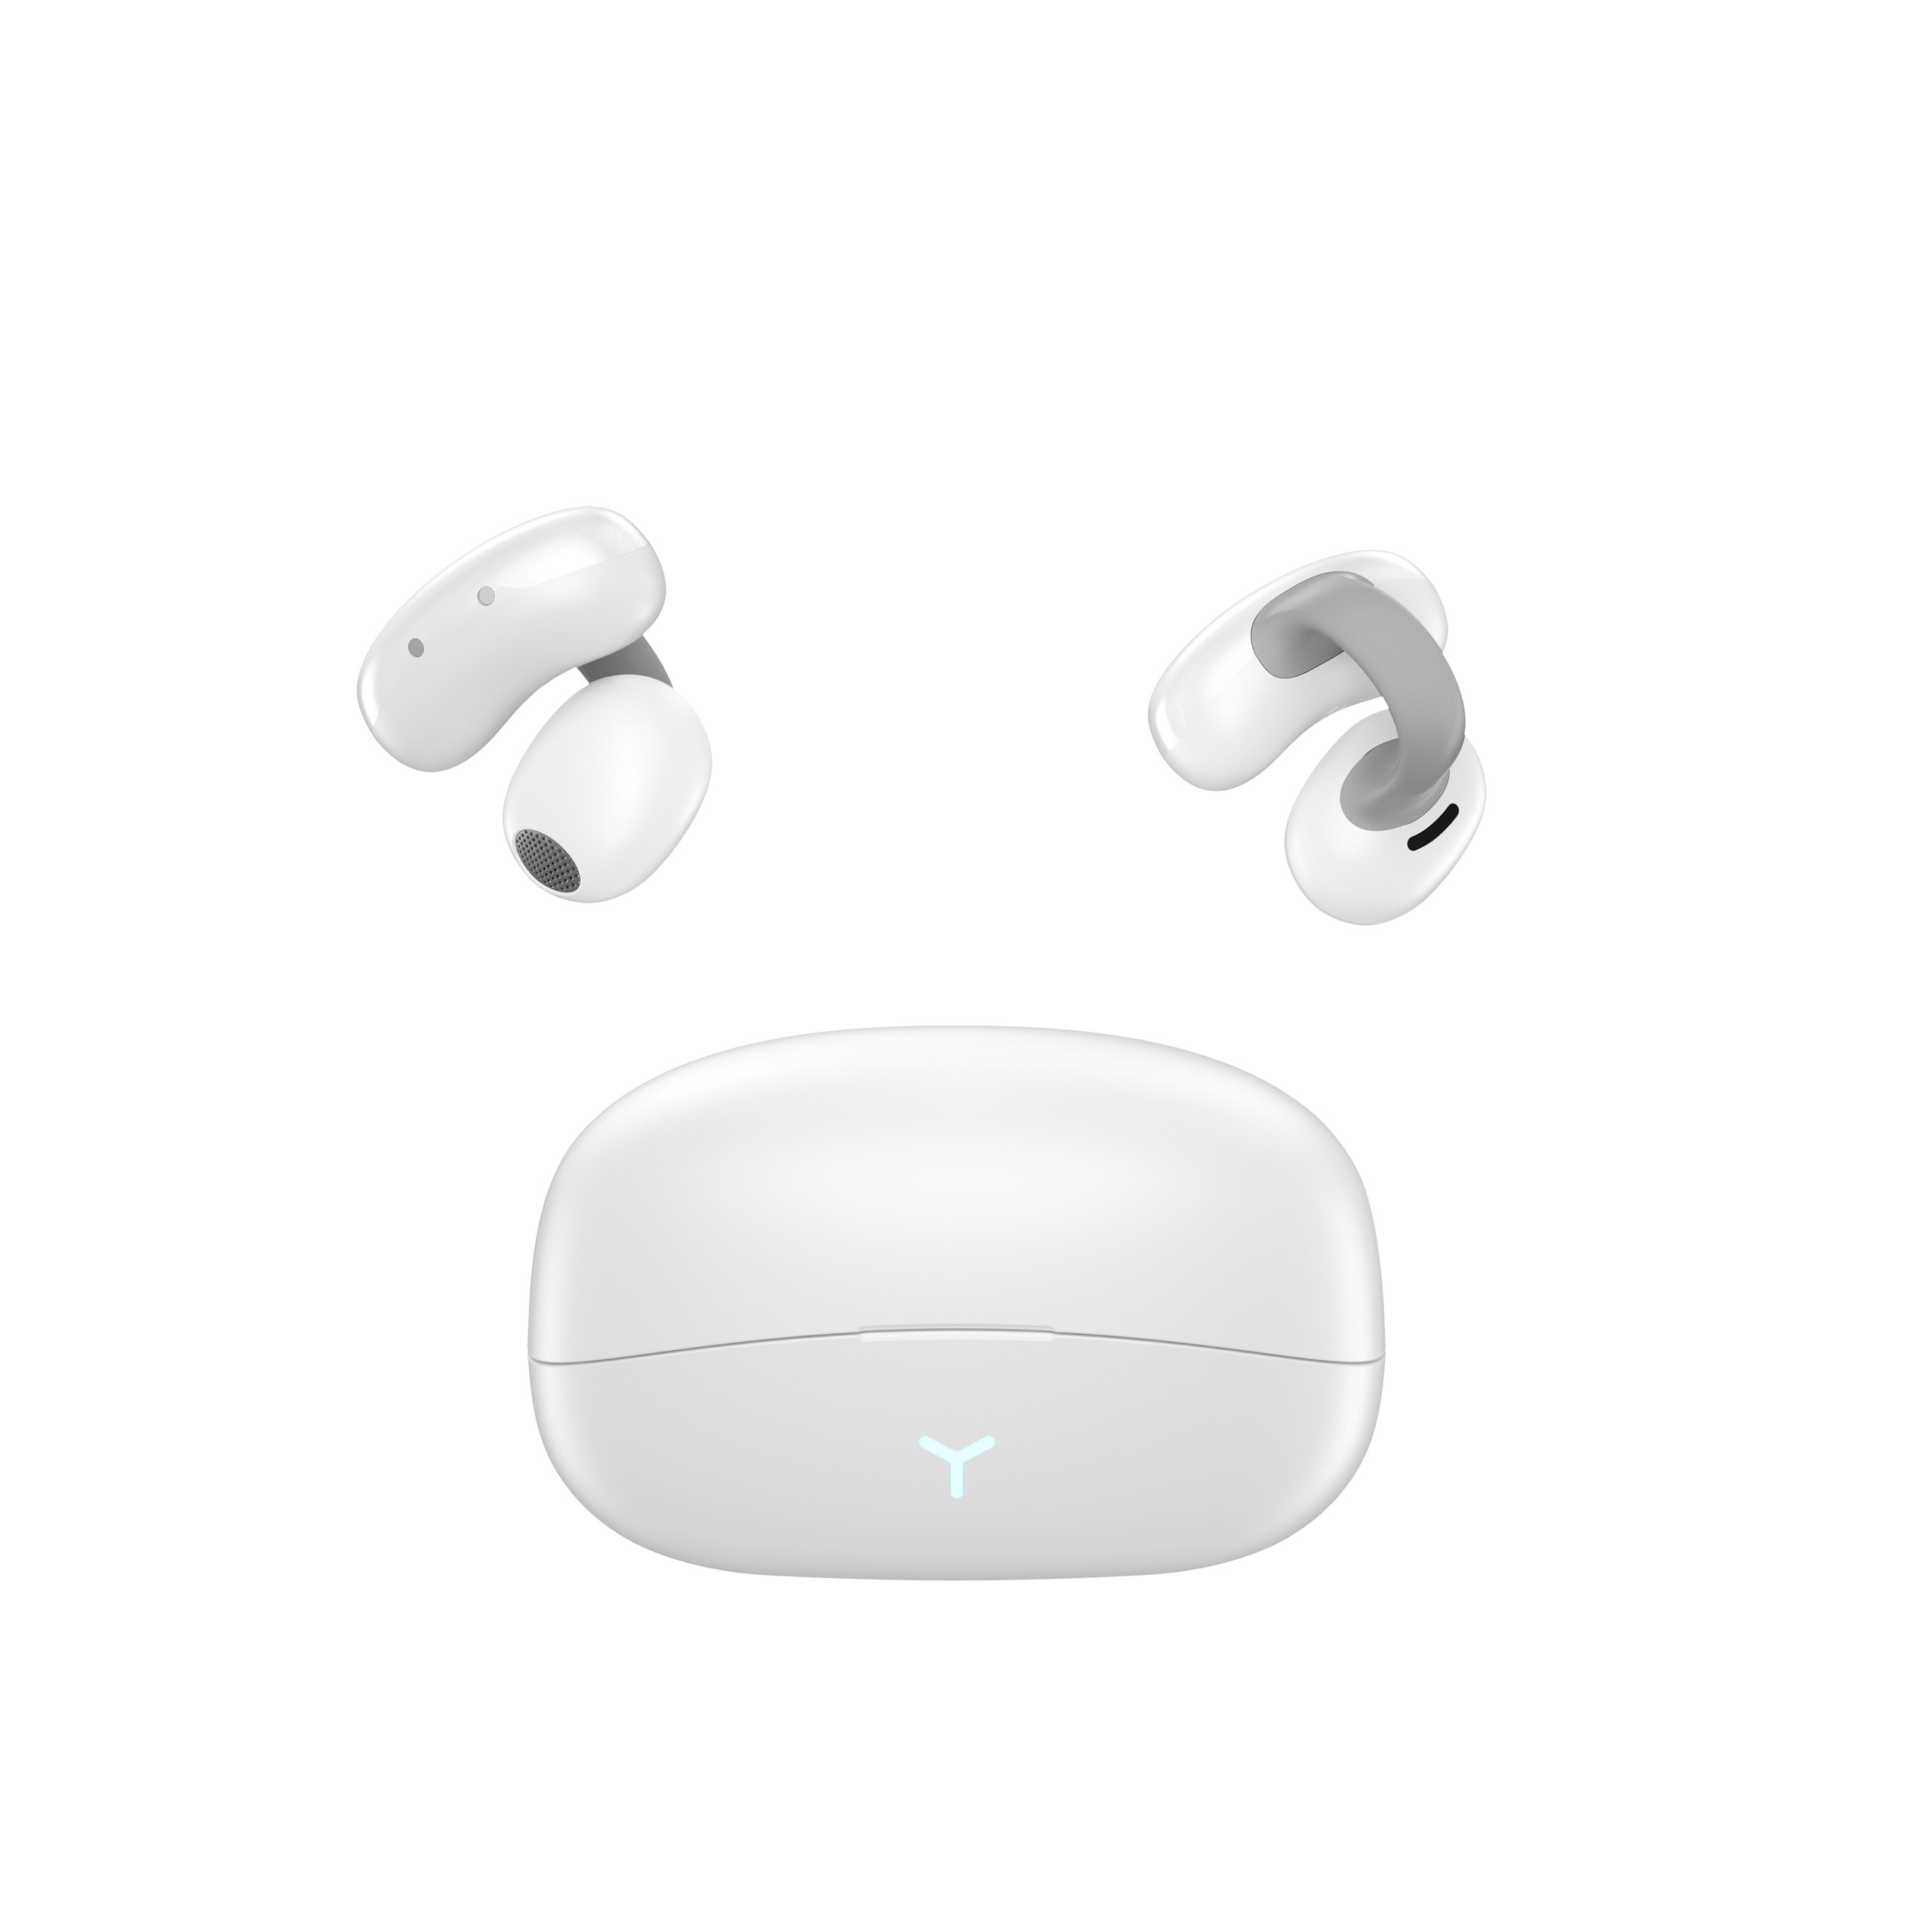 Tai nghe Wiwu Pandora T17 cho các thiết bị kết nối Bluetooth, điều khiển tai nghe bằng cảm ứng chạm chính xác, hoạt động độc lập từng bên - Hàng chính hãng